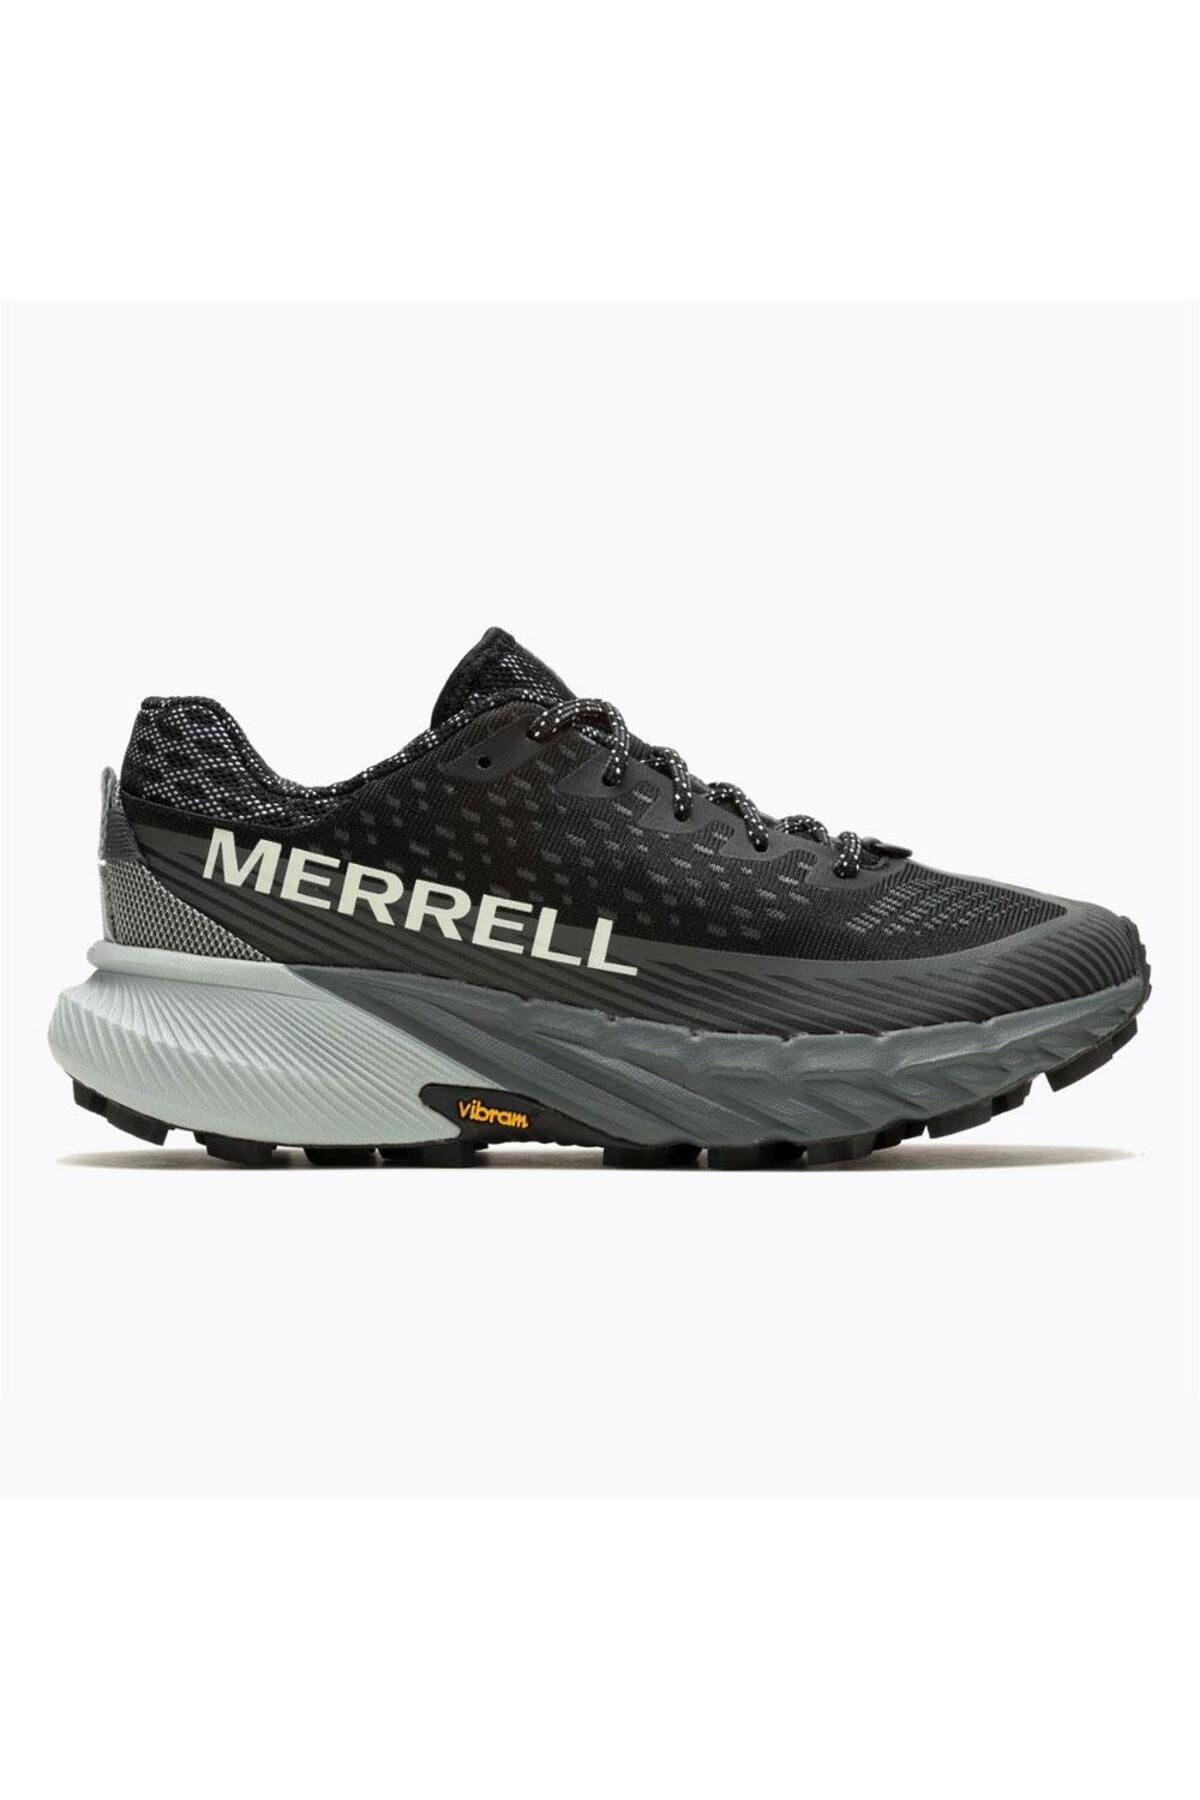 Merrell Agılıty Peak 5 Erkek Siyah Spor Ayakkabı J067759-10084